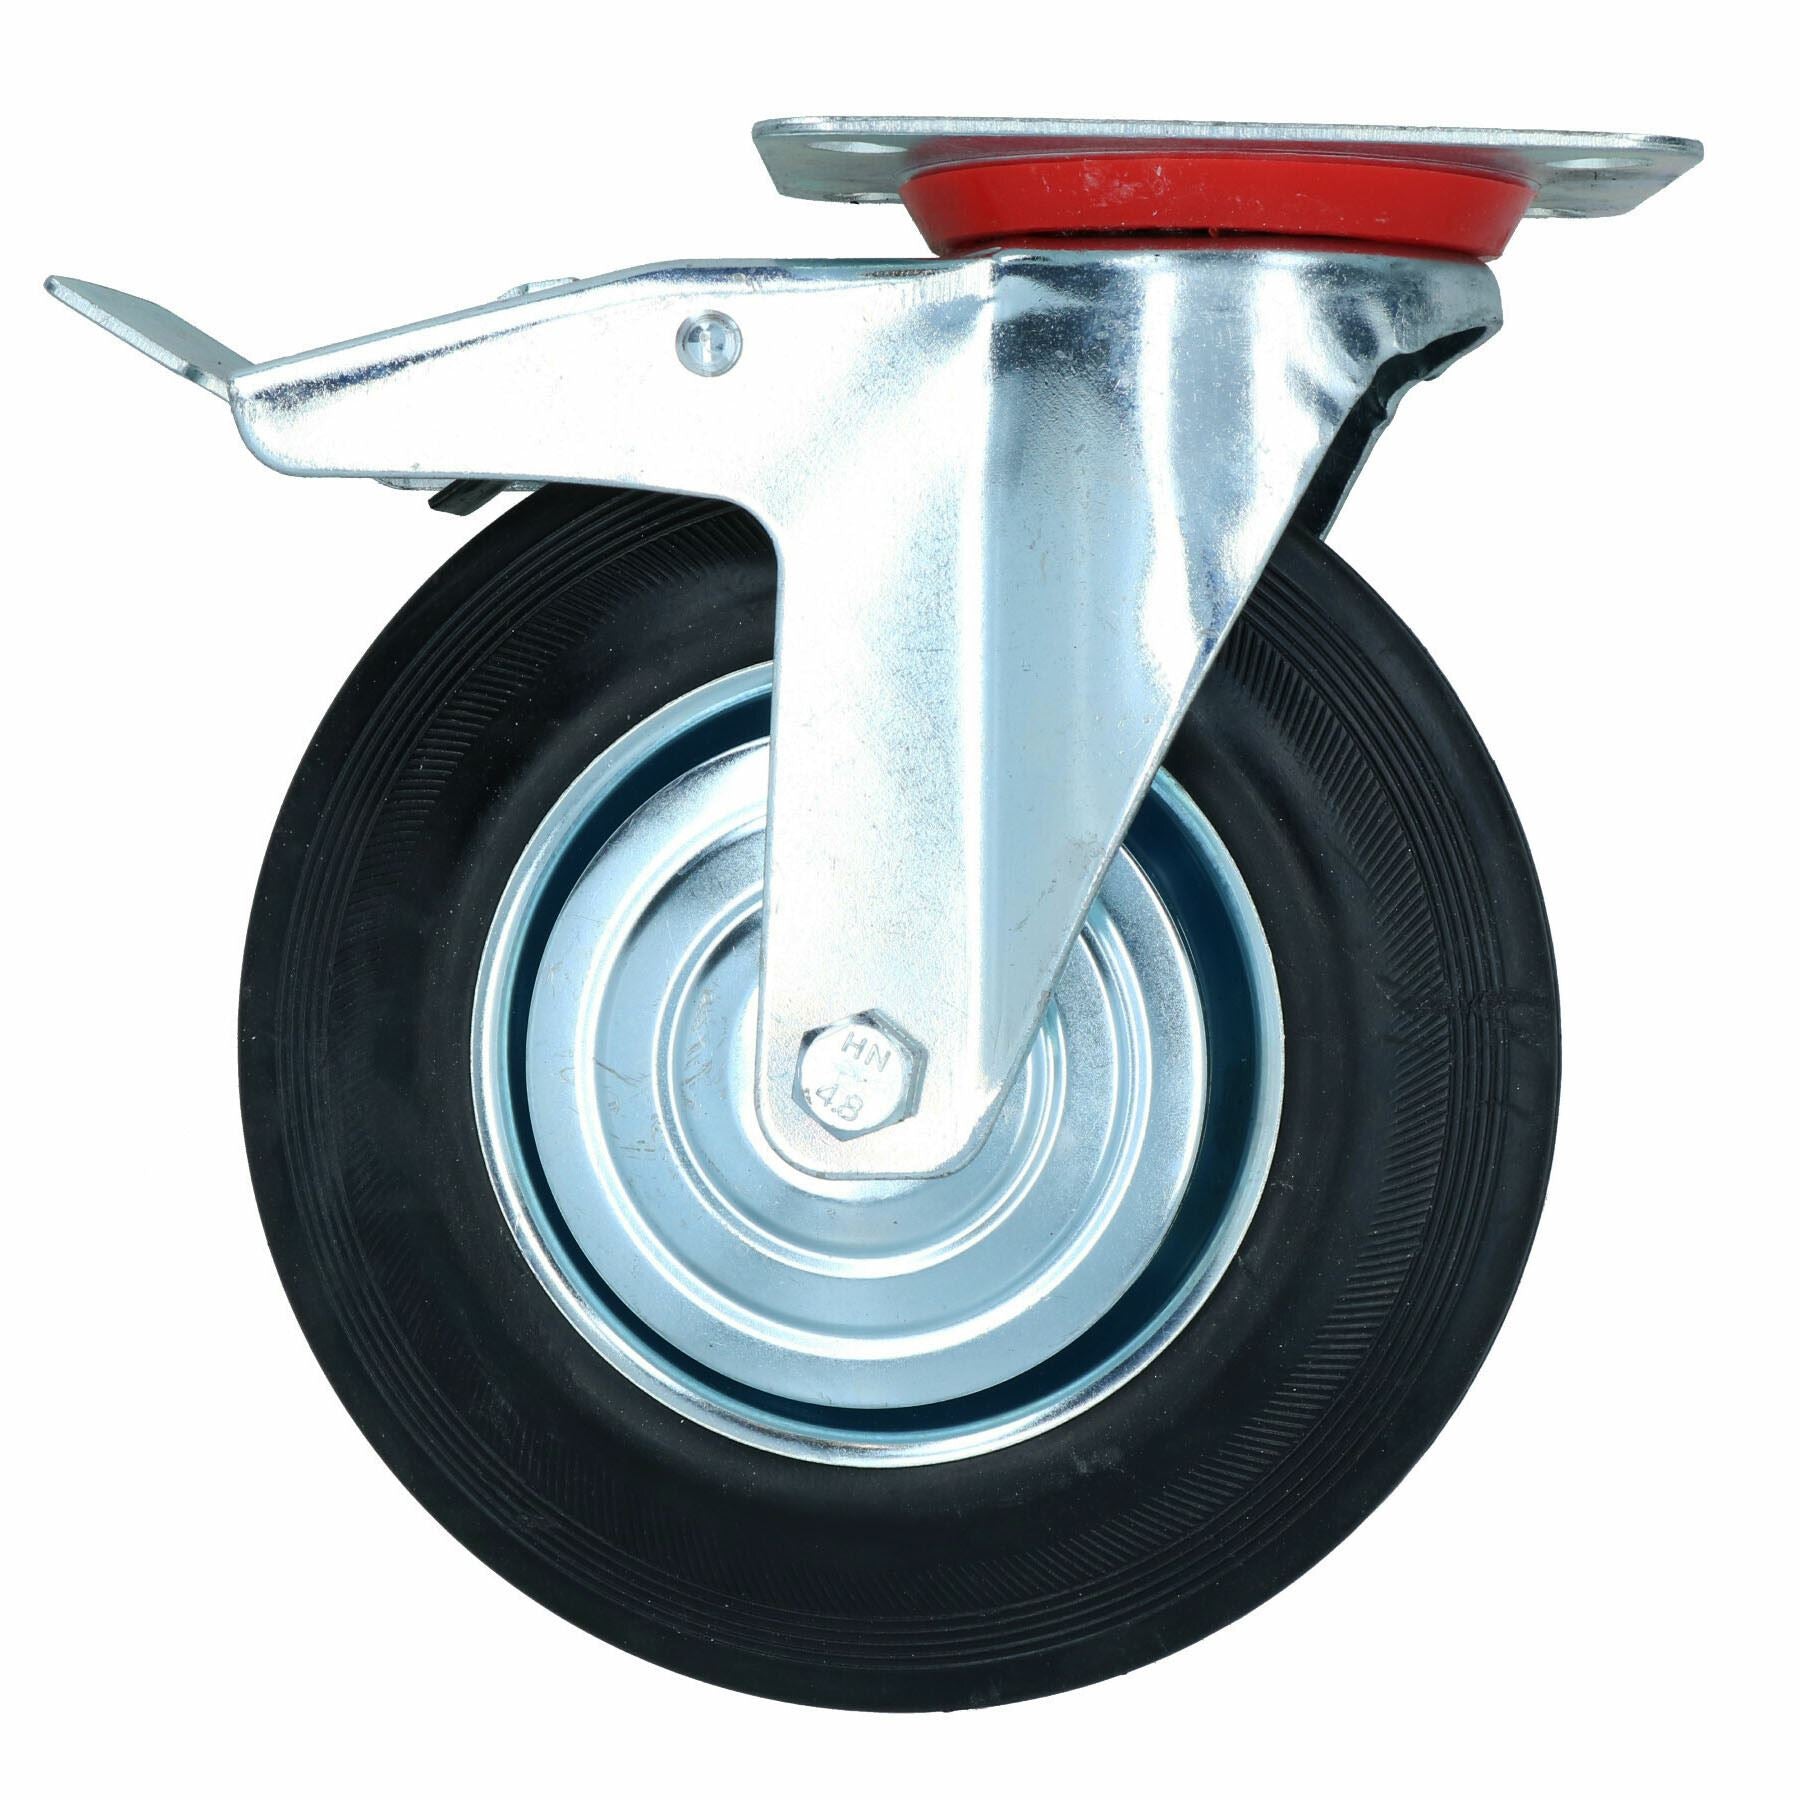 200mm (8in) HD Braked Castor Wheel Rubber Tyre For Trolleys Trucks Carts